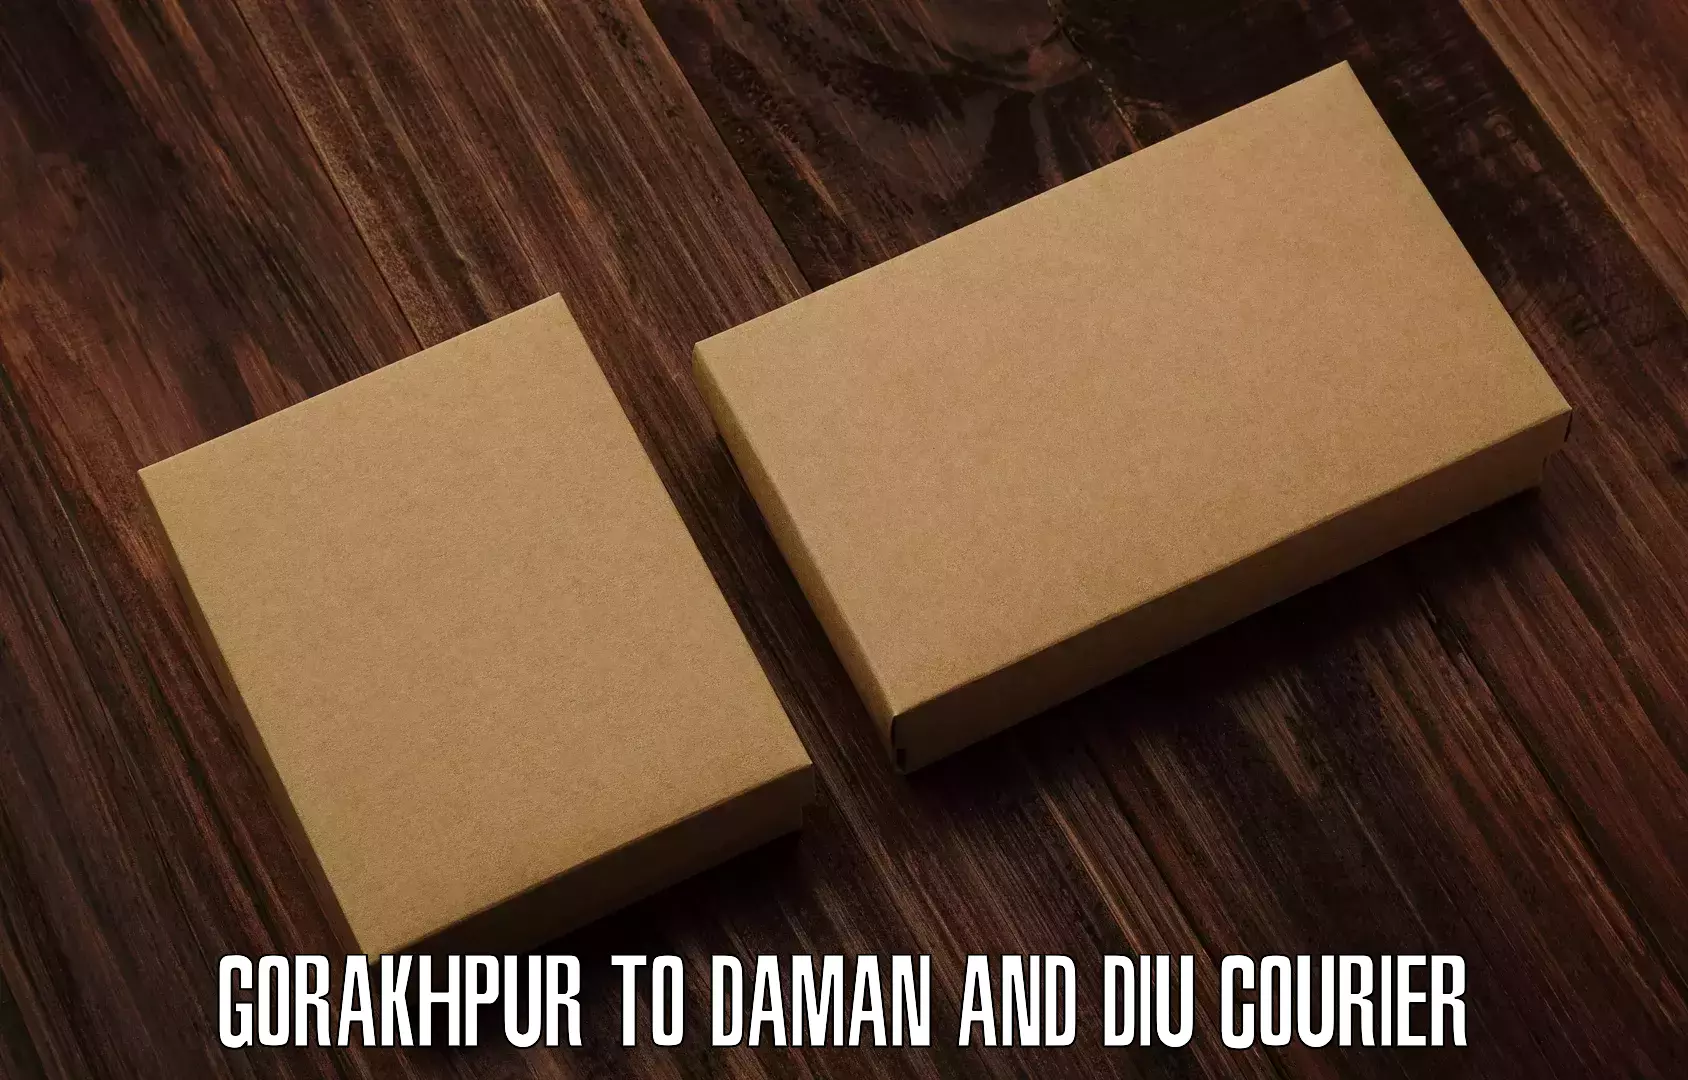 Domestic courier Gorakhpur to Daman